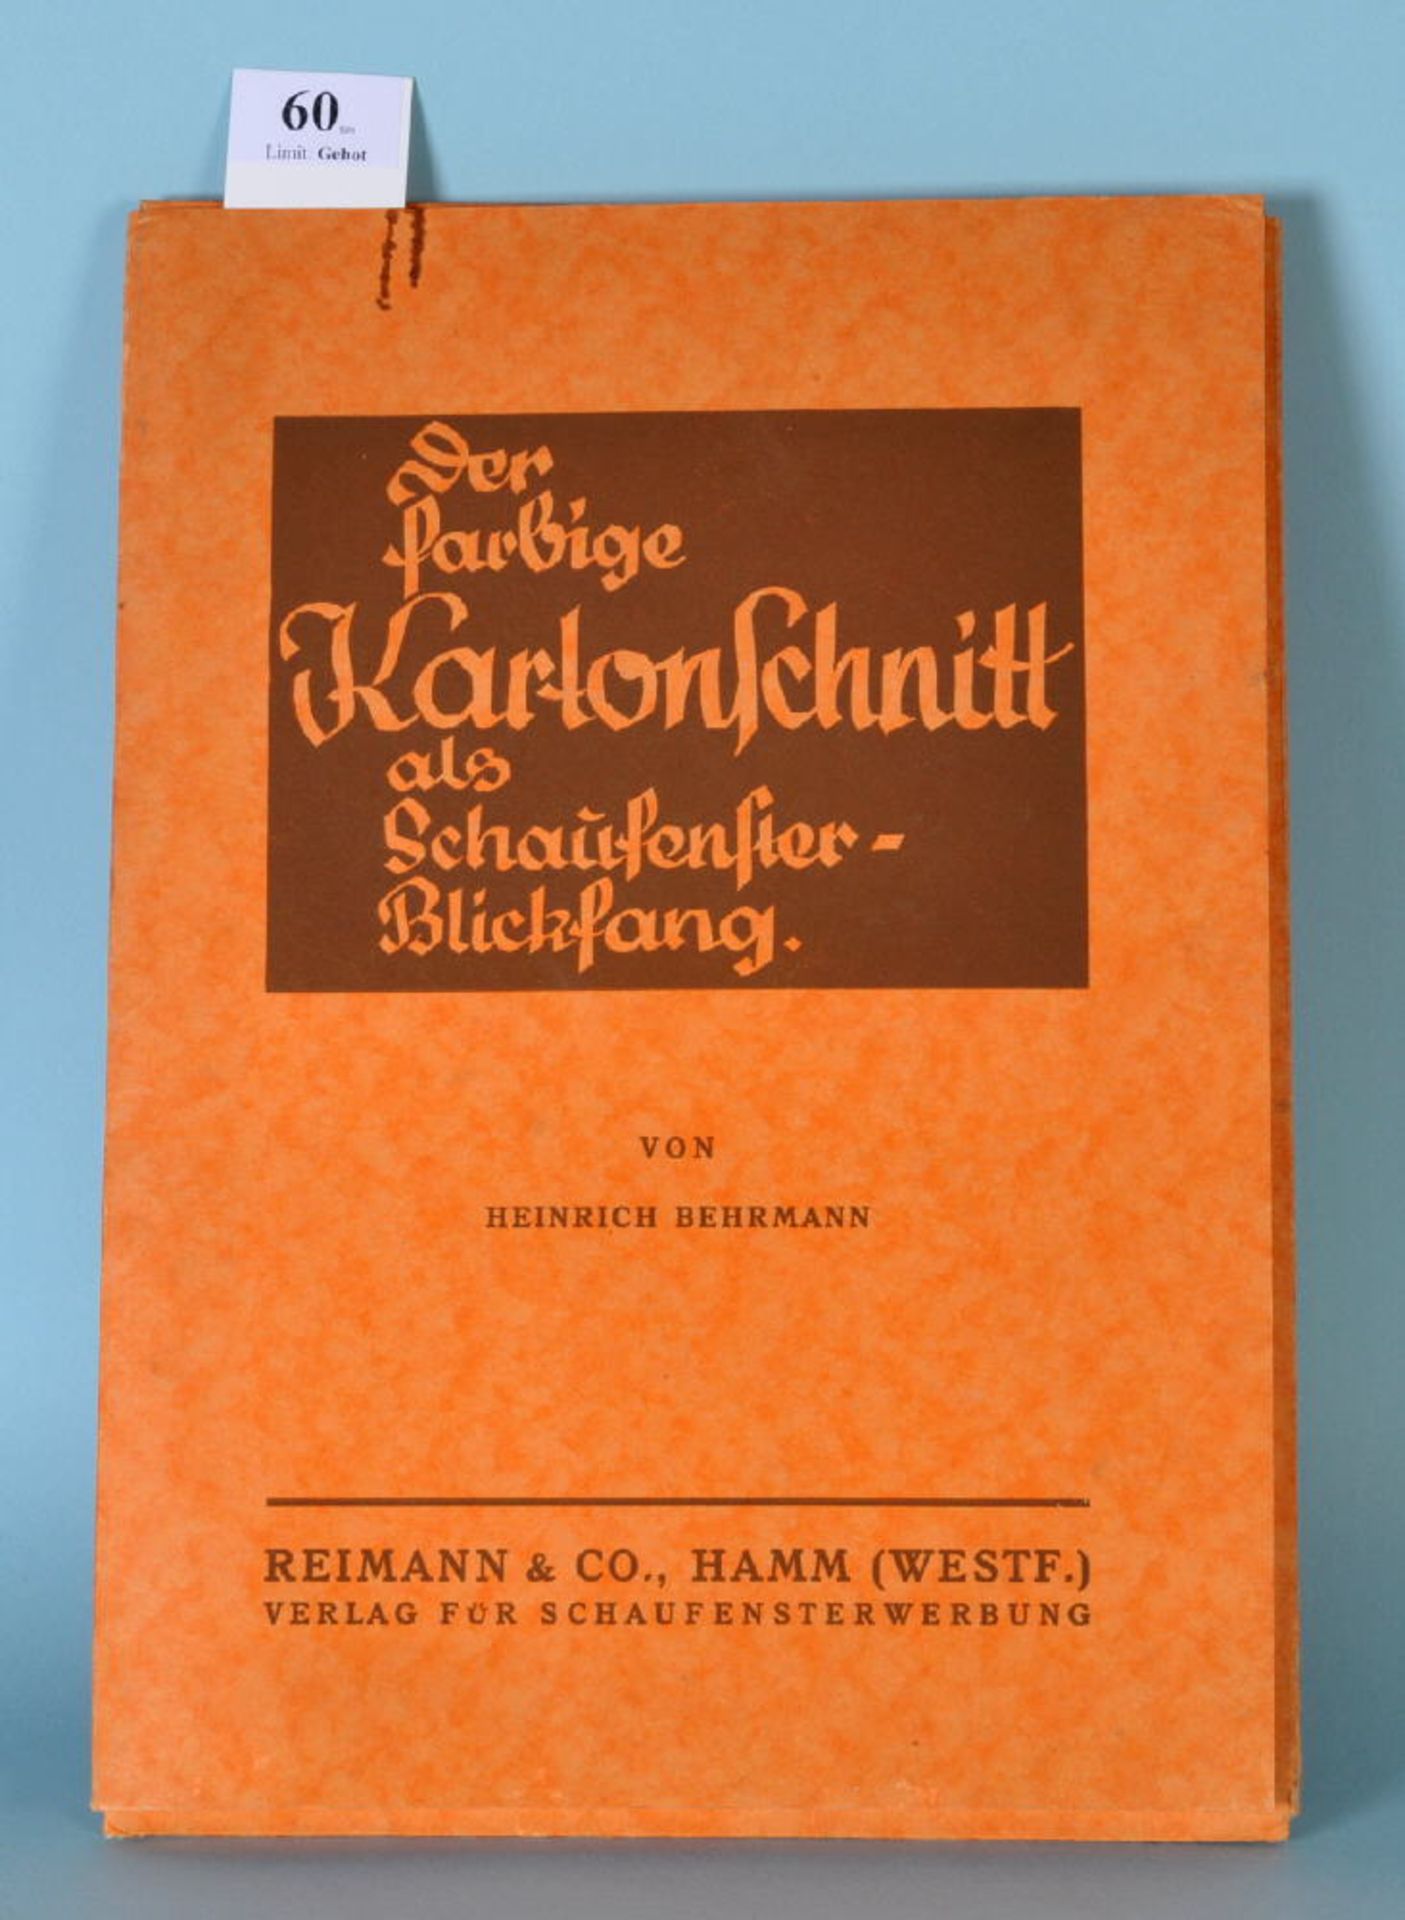 Behrmann, Heinrich "Der farbige Kartonschnitt als...""...Schaufenster-Blickfang", Mappe mit 19